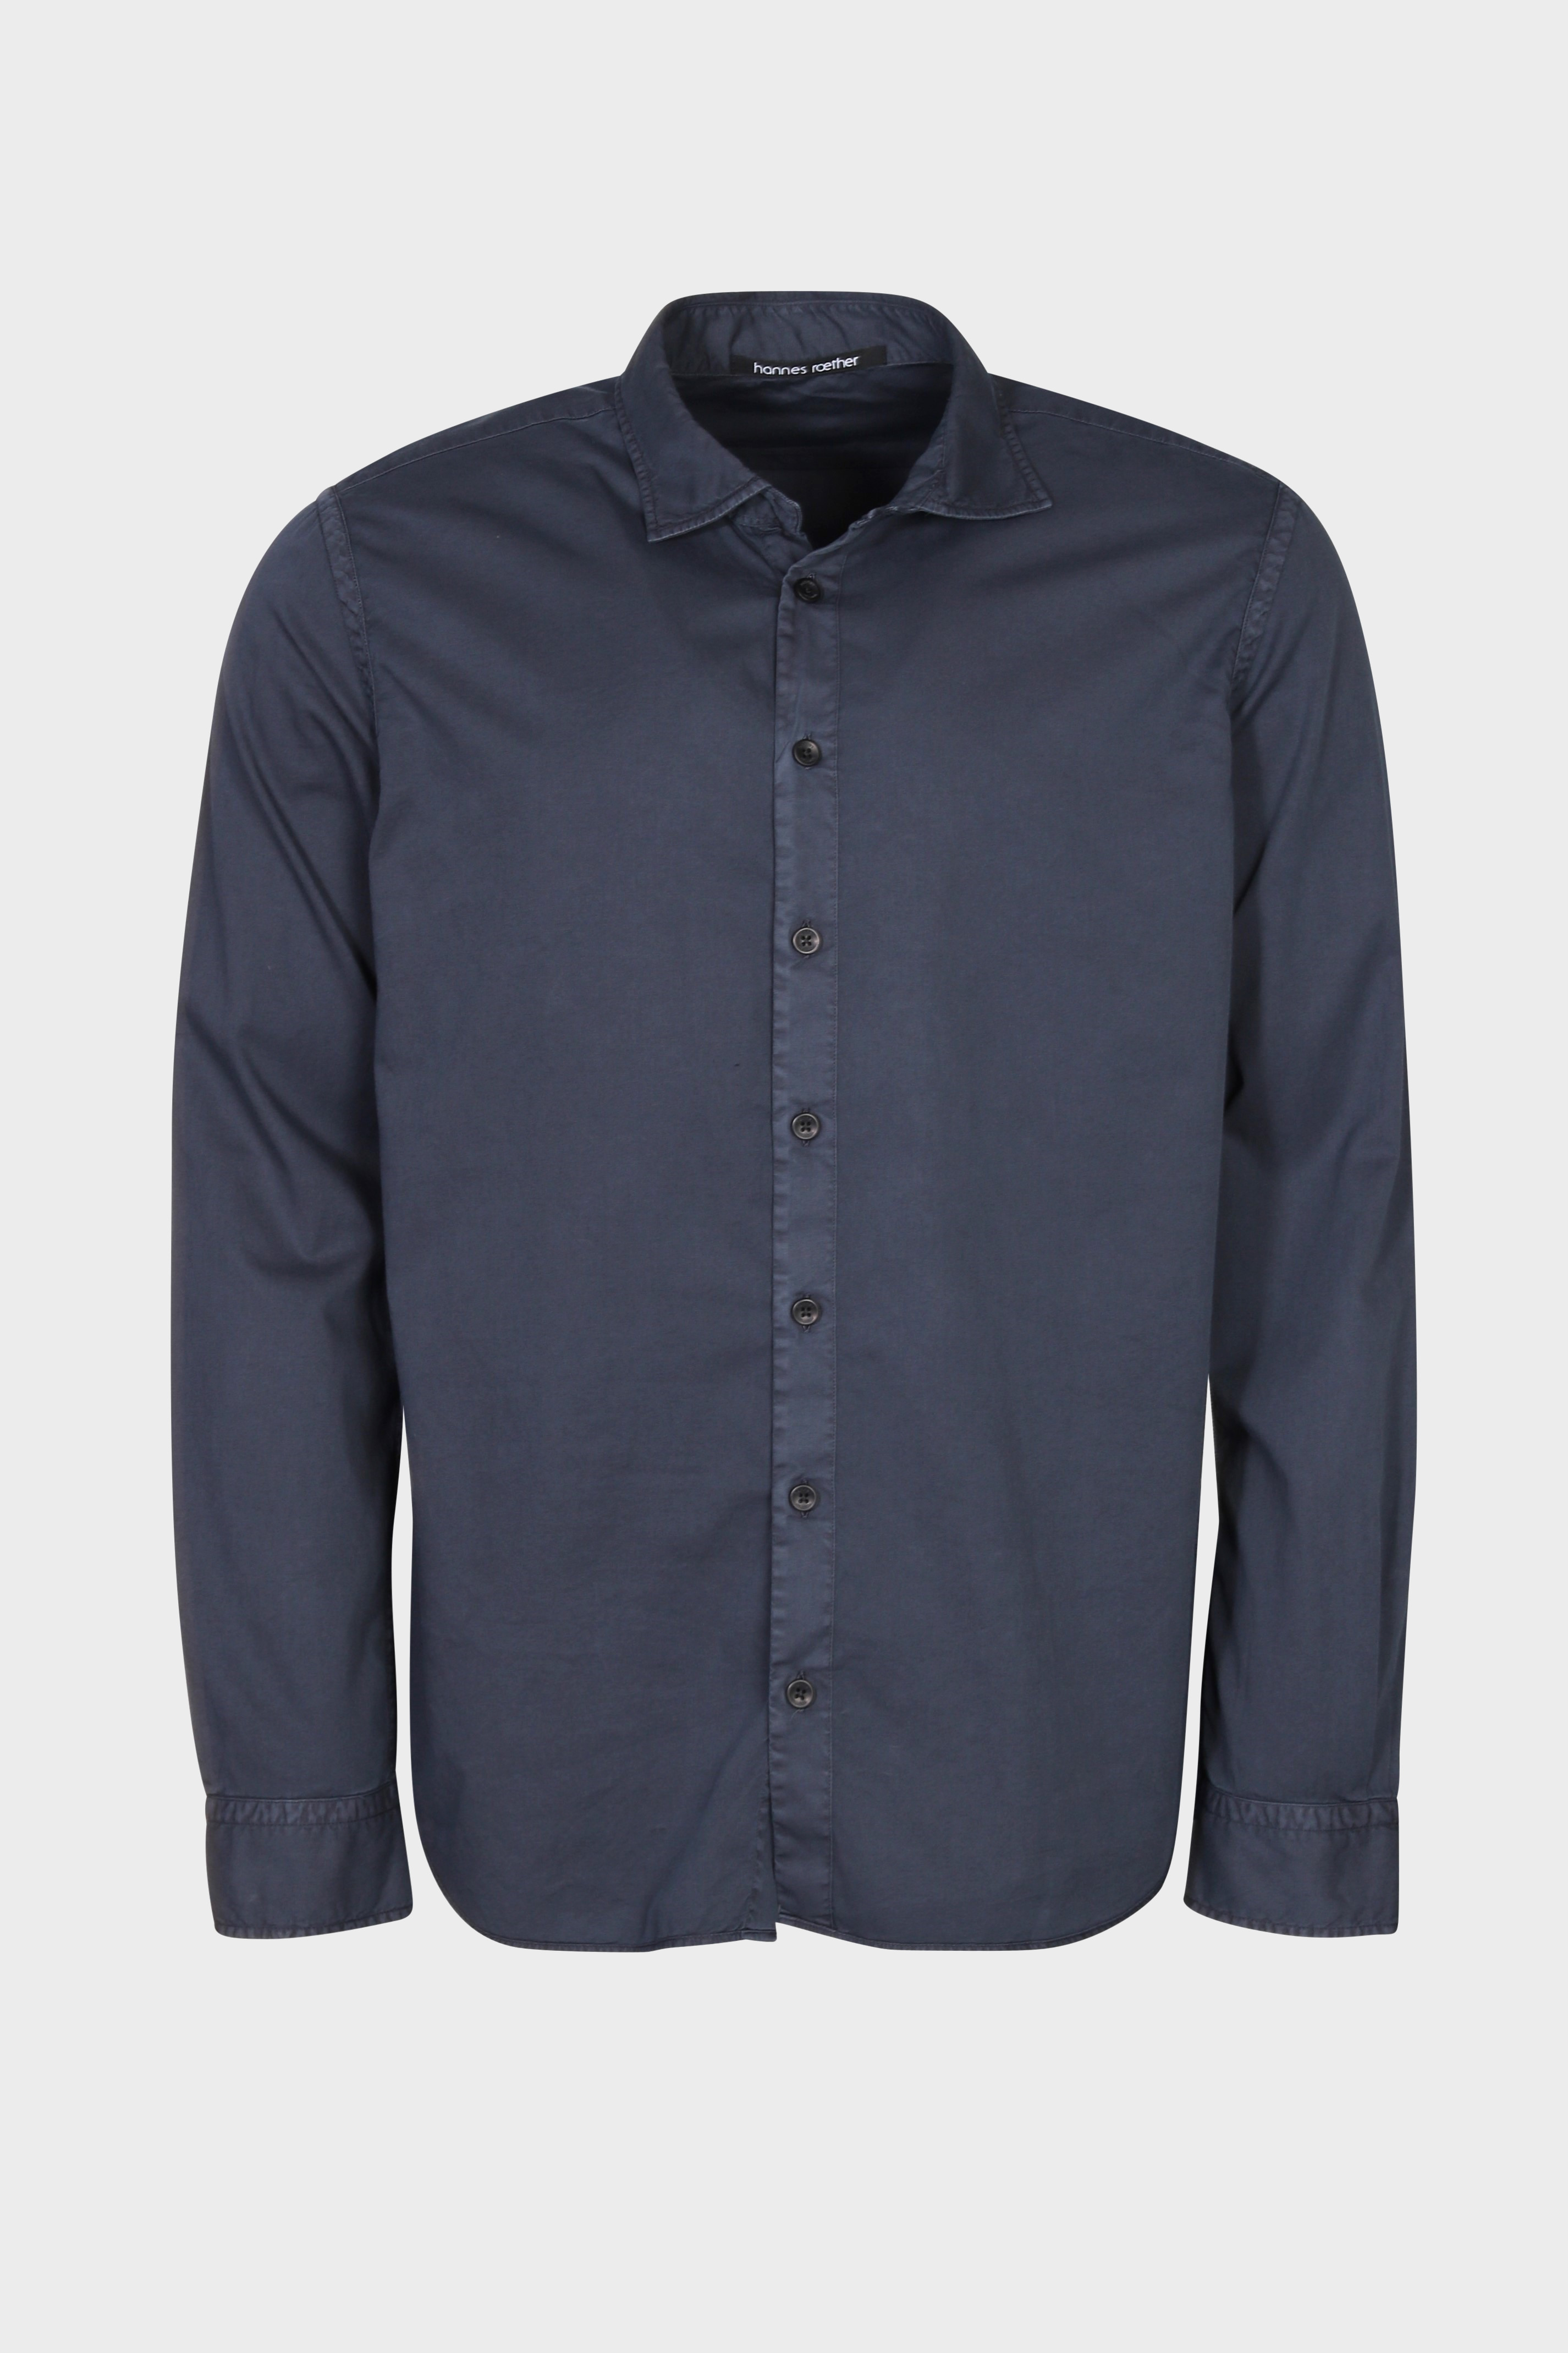 HANNES ROETHER Cotton Shirt in Dark Blue XL